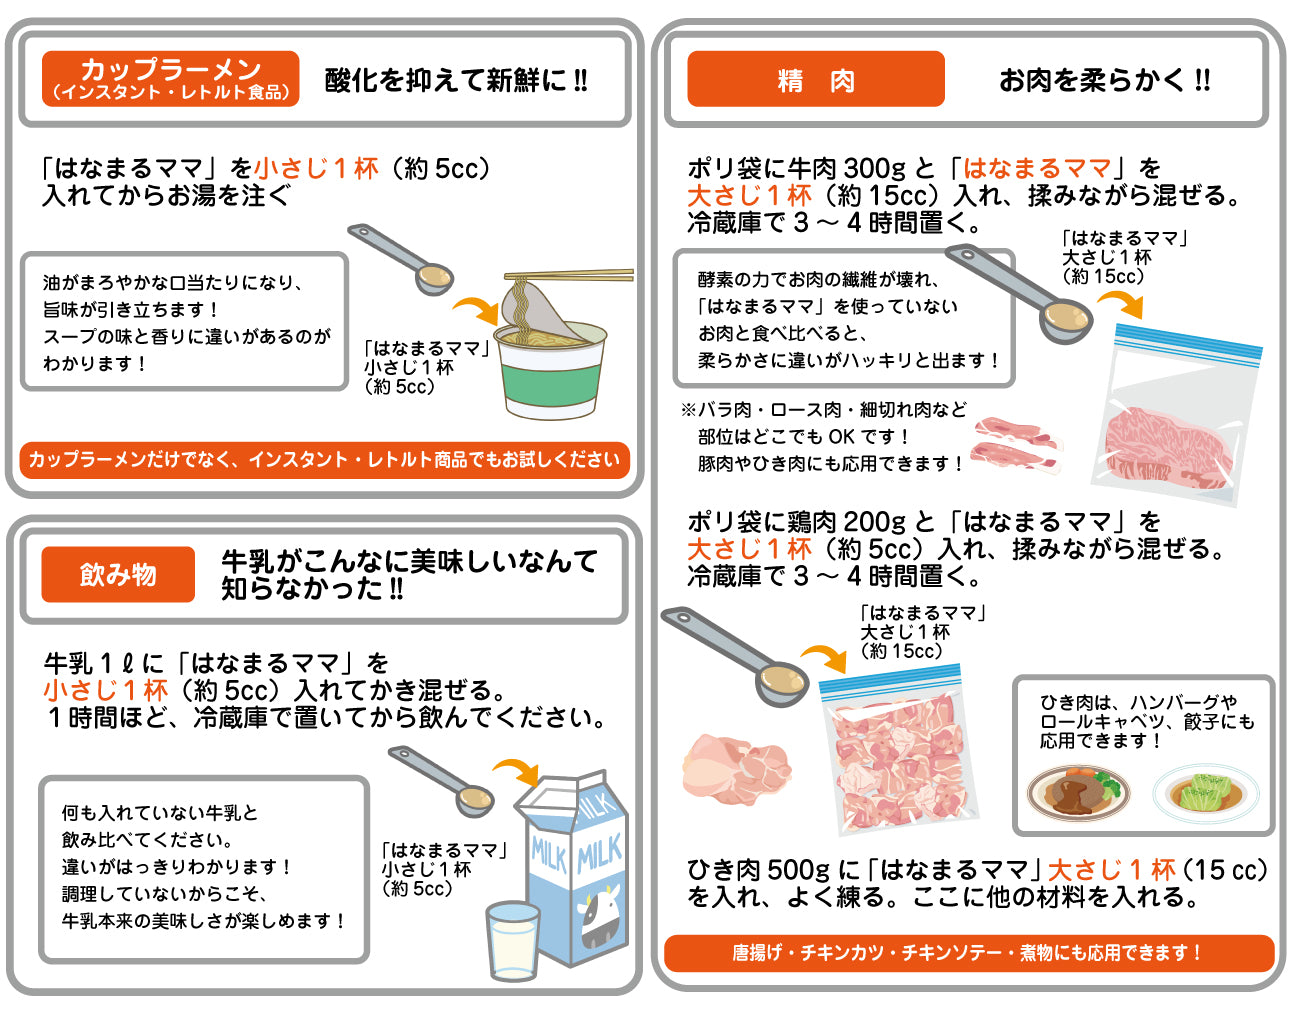 【定期】玄米醗酵アミノ酸調味料 はなまるママ